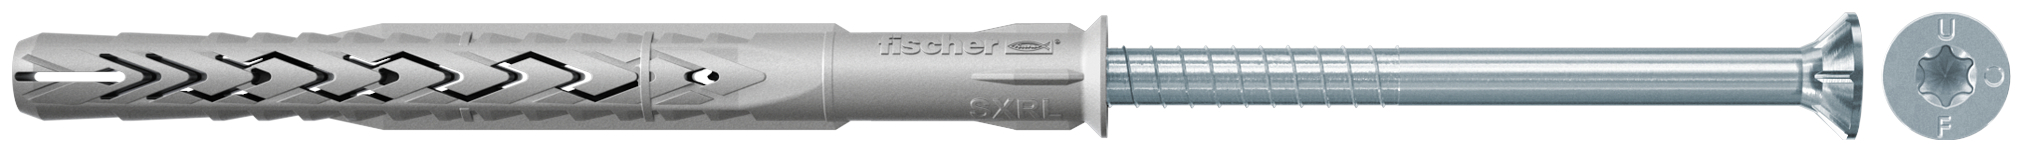 fischer Tasselli prolungati SXRL 8x80 T (1 Pz.) Tassello prolungato in nylon con marcatura CE con vite premontata T.S.P. impronta torx fie3158